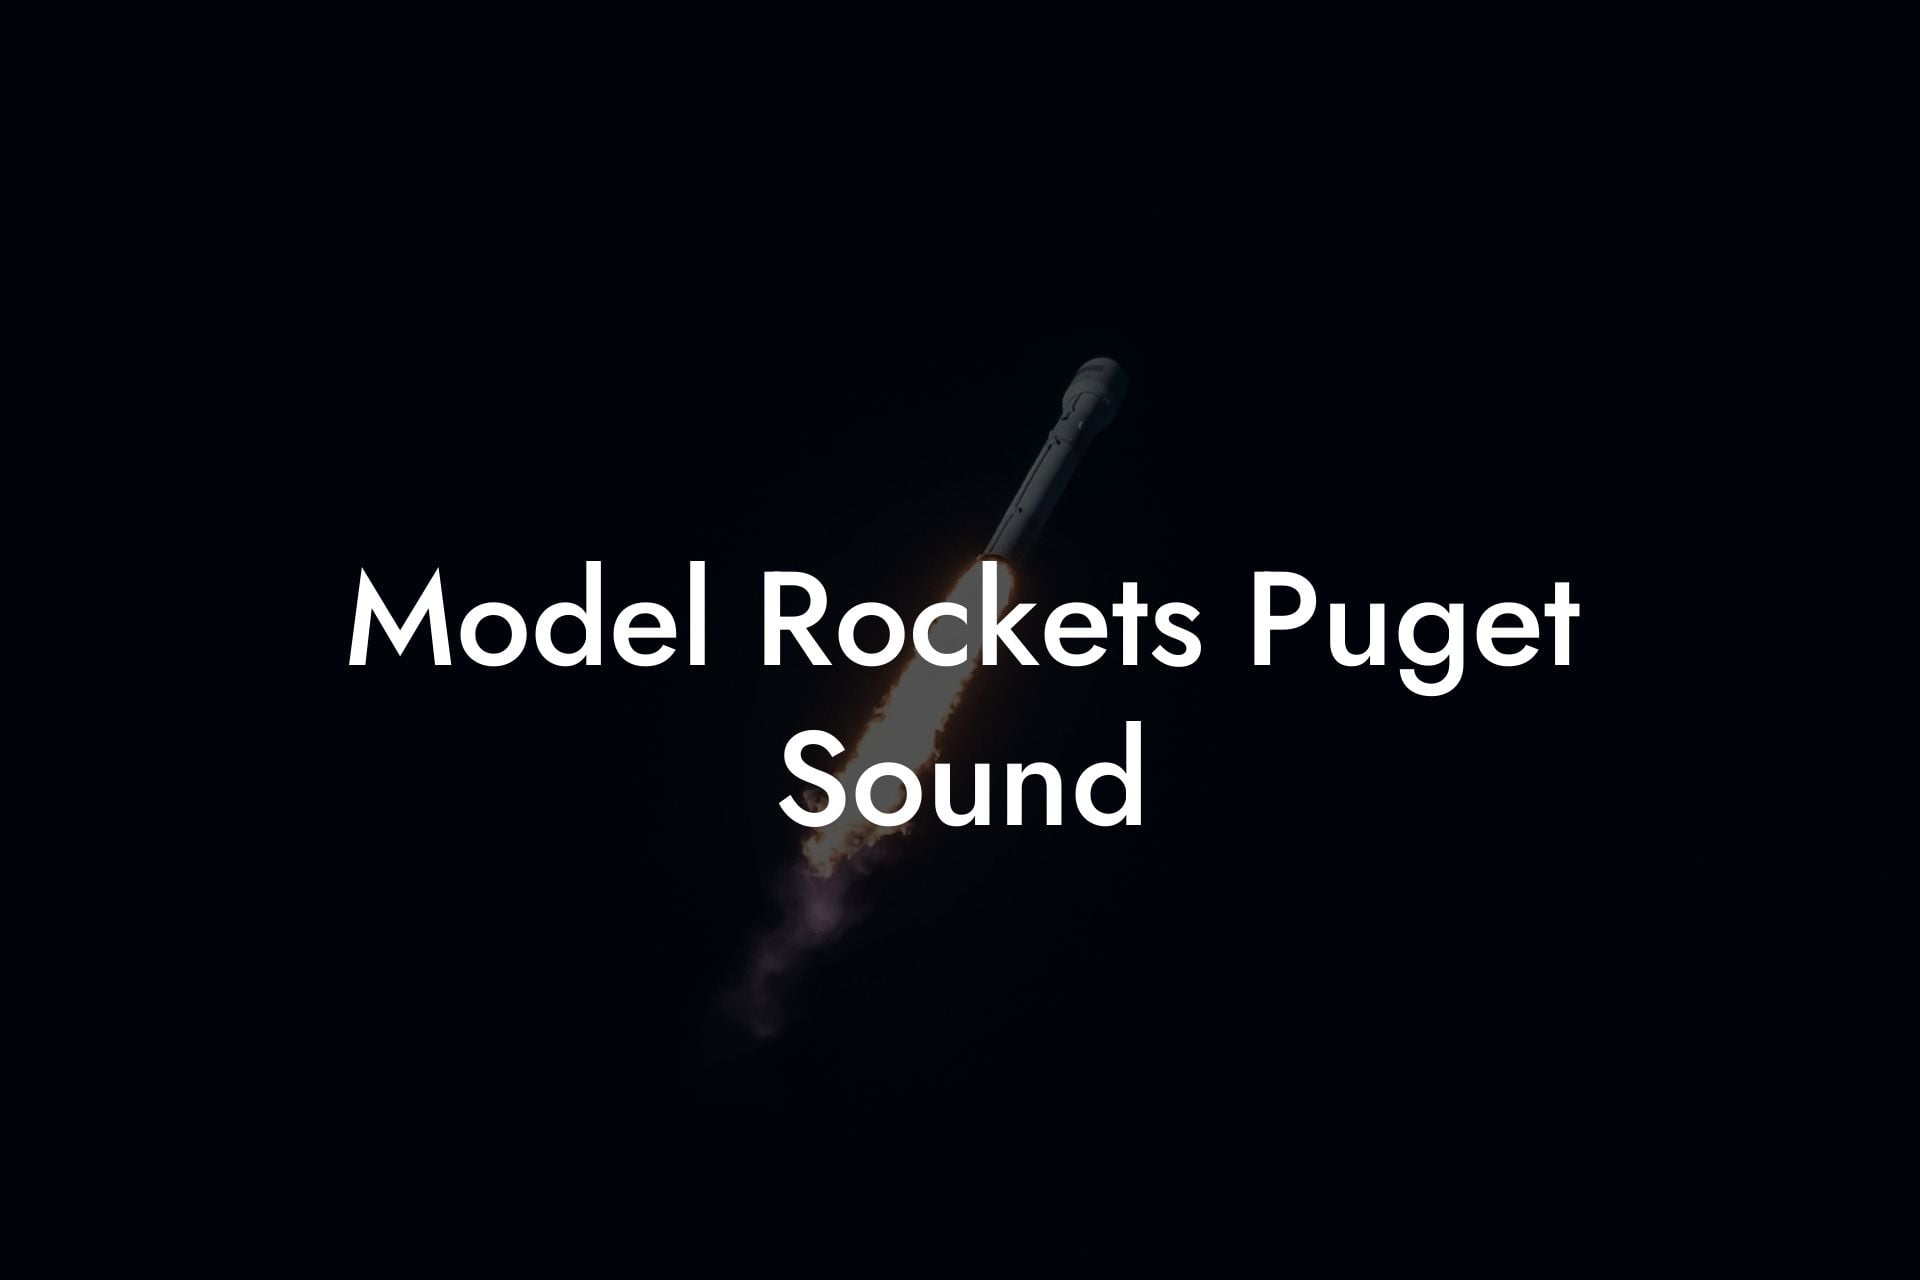 Model Rockets Puget Sound